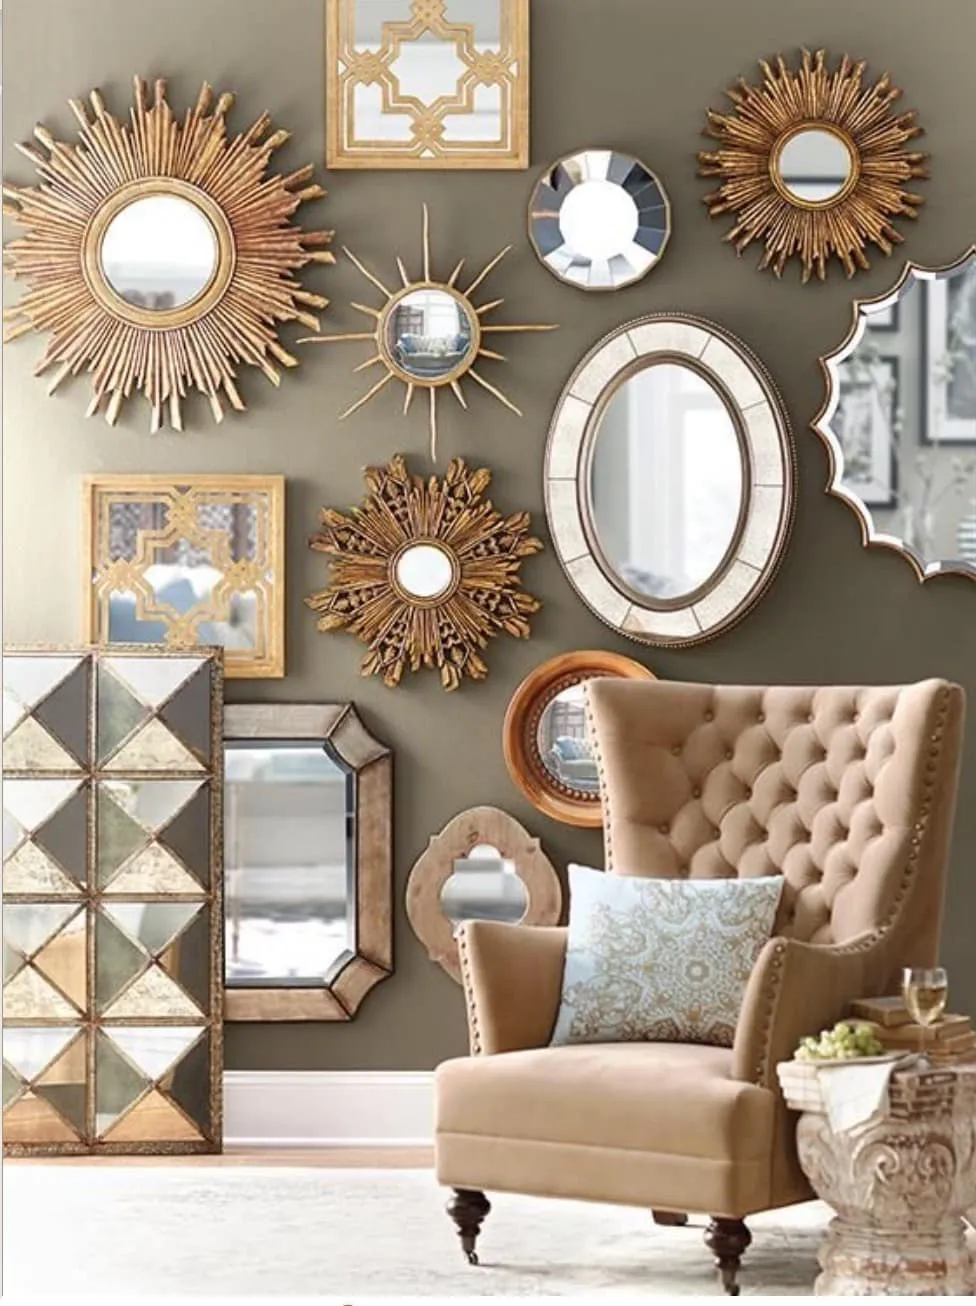 Живописный колорит и удивительная гармония красивых зеркал на стене выполненных в едином стиле с обивкой мебели 